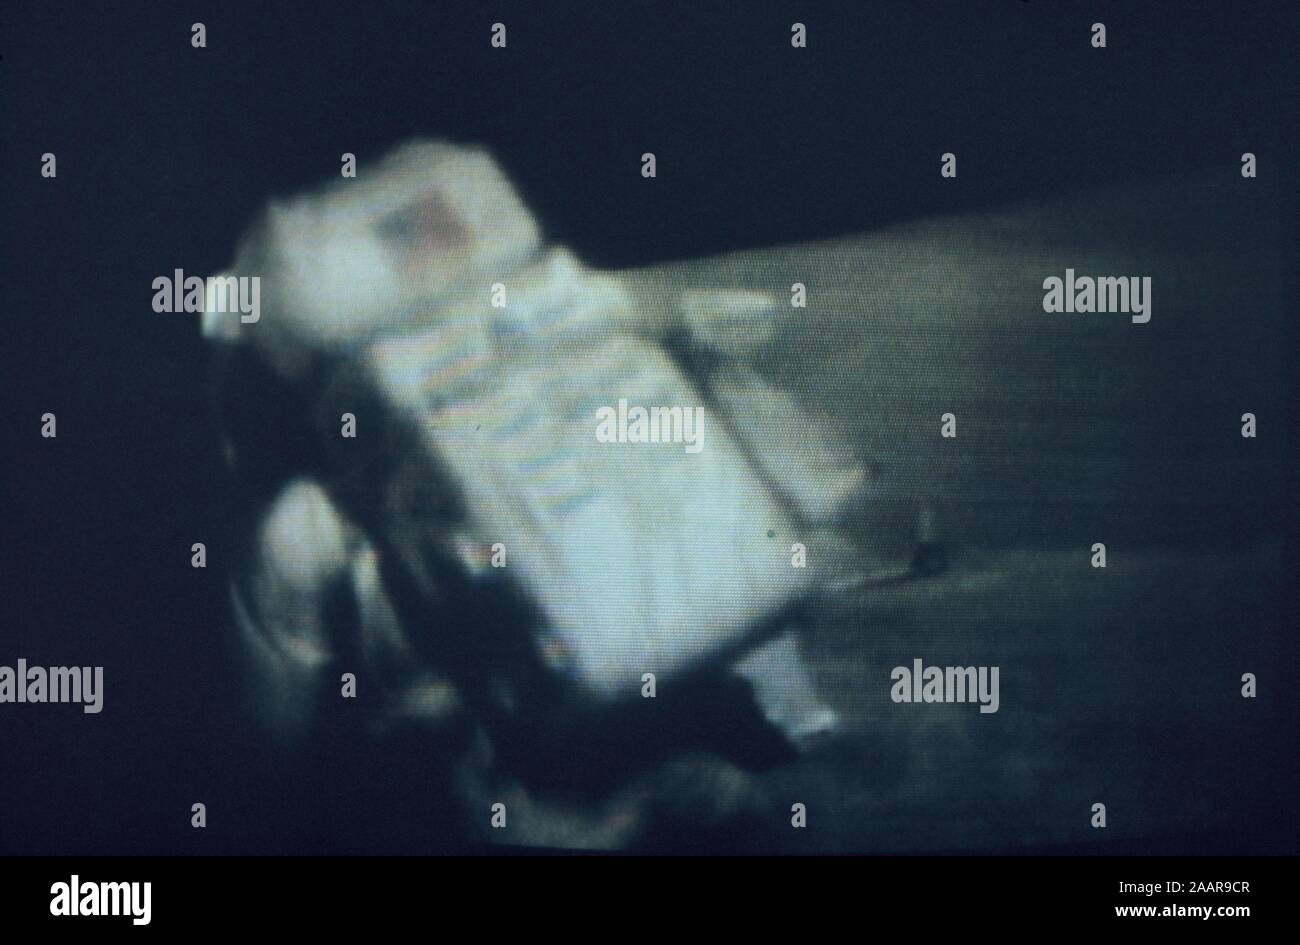 Teleclip - Buzz Aldrin trébuche sur la surface de la lune - Apollo 11 photo prise lors d'émission en direct/s circa 1969-1972 Banque D'Images